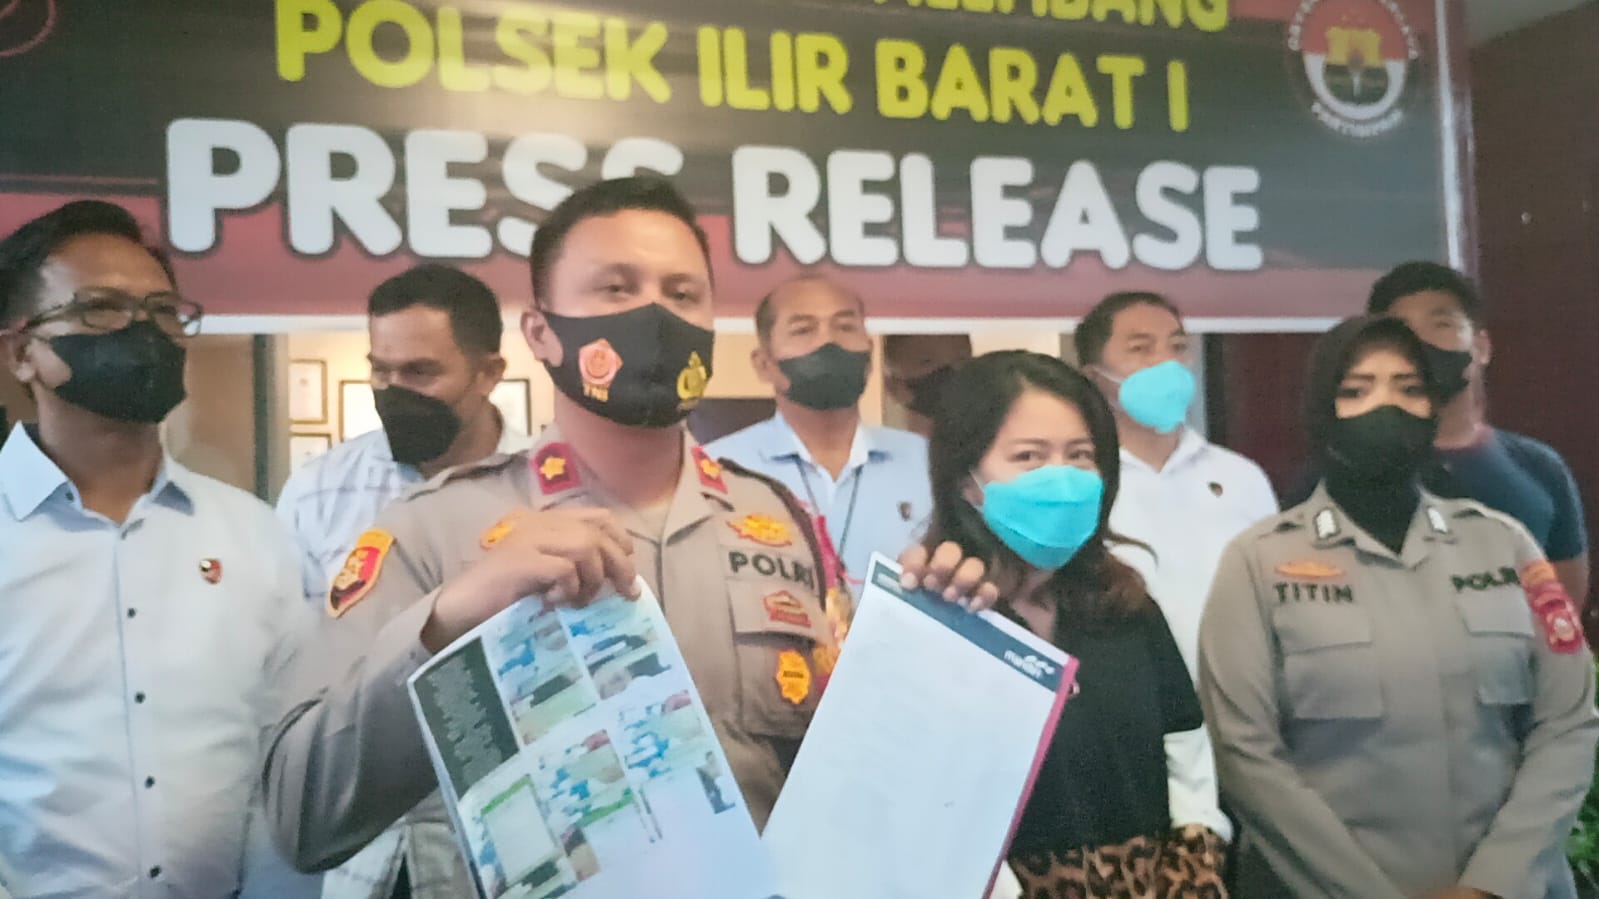 Gelar Perkara: Selebgram Palembang diciduk Kepolisian Sektor Ilir Barat [IB I] atas kasus tindak pidana penipuan investasi butik dan arisan bodong.